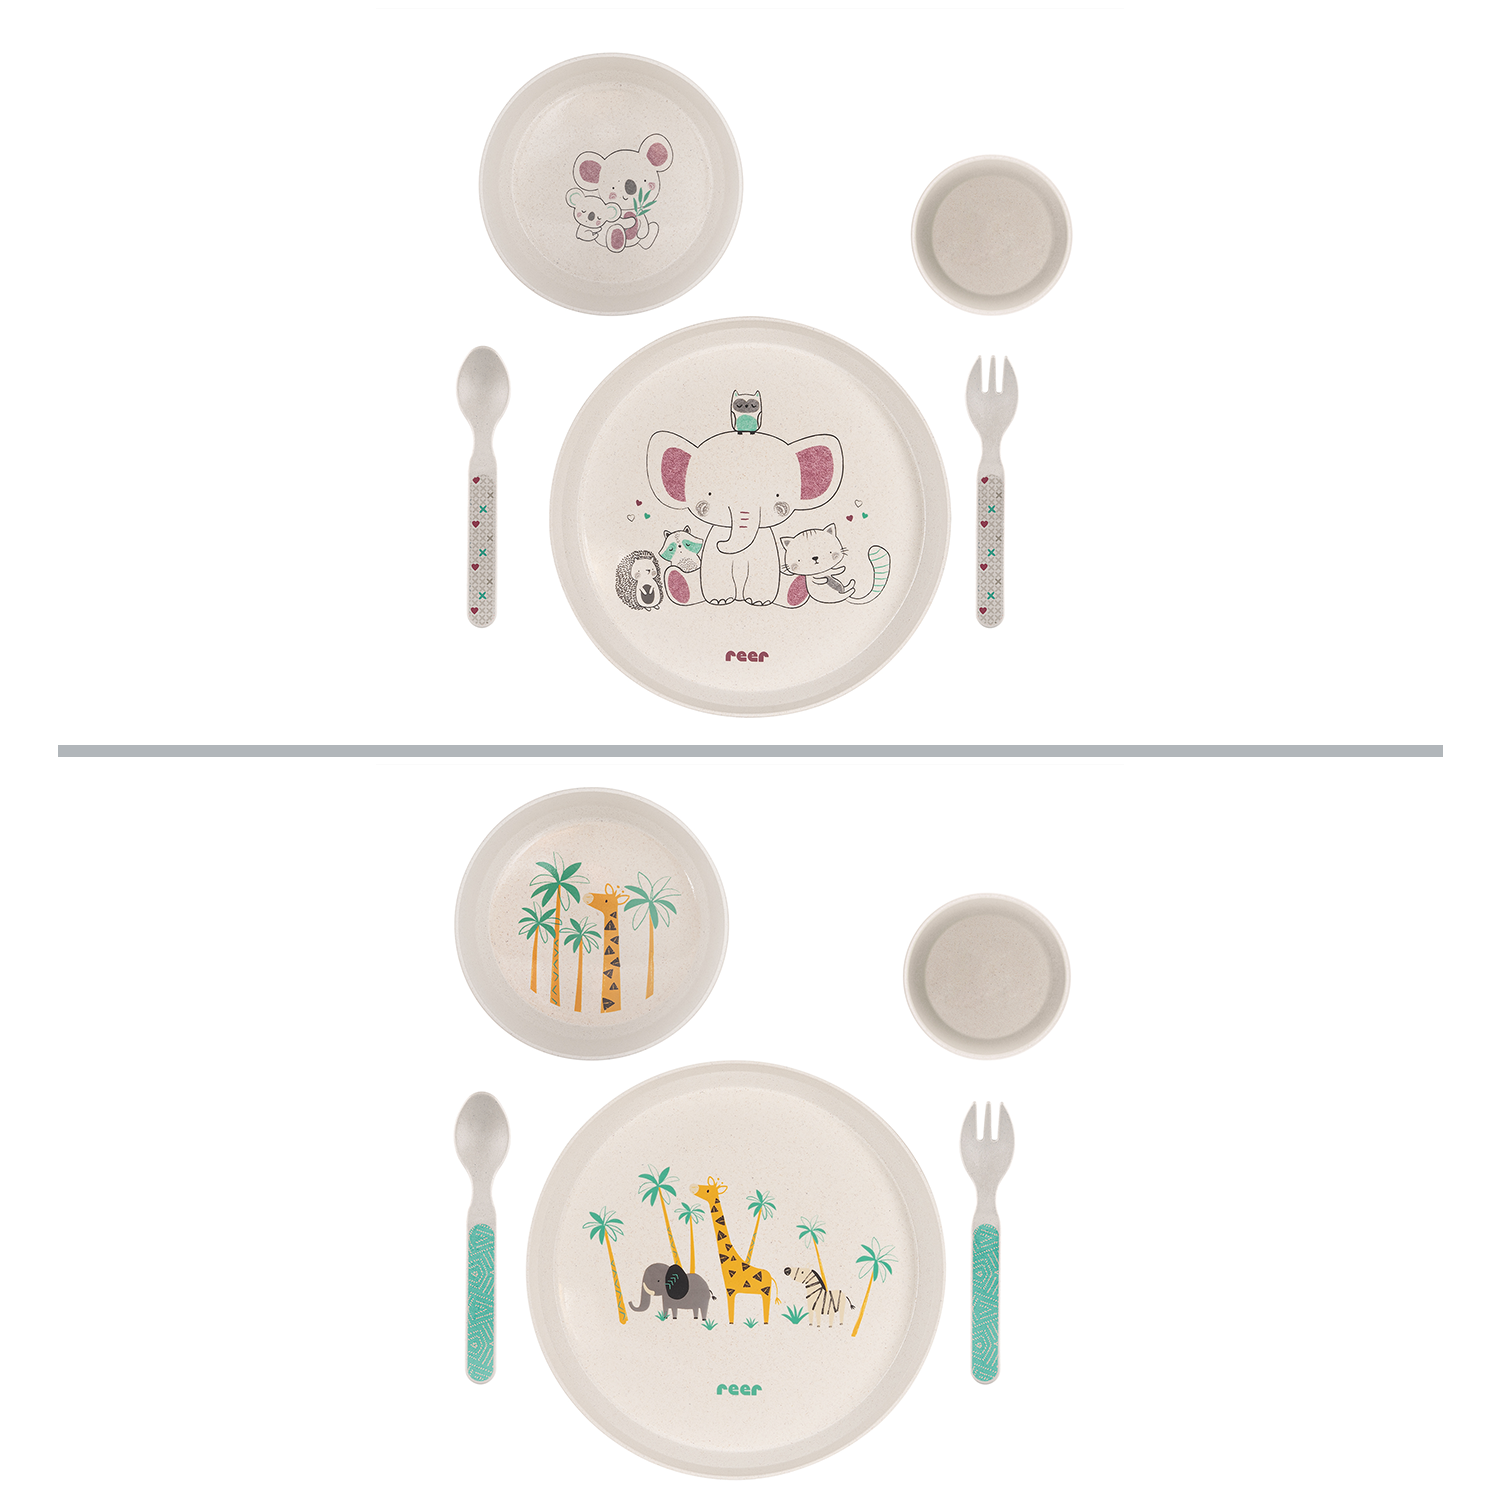 Growing Children’s dinnerware set